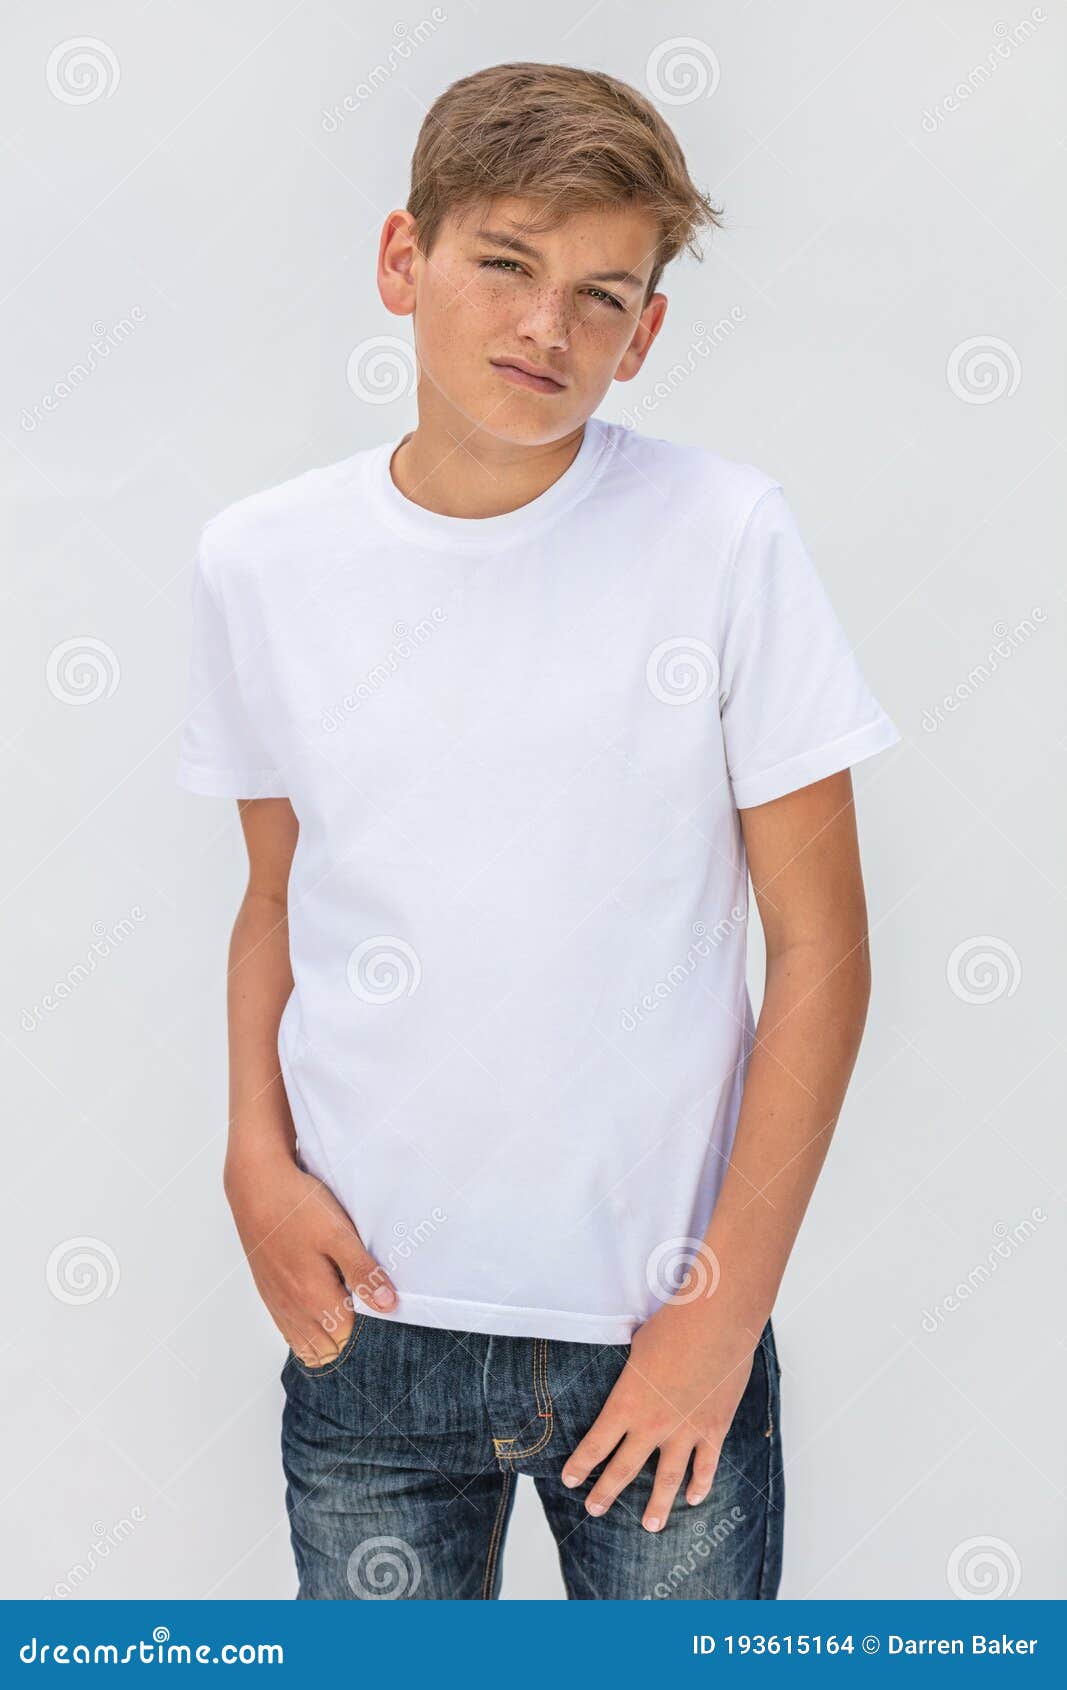 Enfant Mâle De L'adolescence D'adolescent De Garçon à L'aide D'un T-shirt  Blanc Et Des Jeans Photo stock - Image du bleu, blanc: 193615164